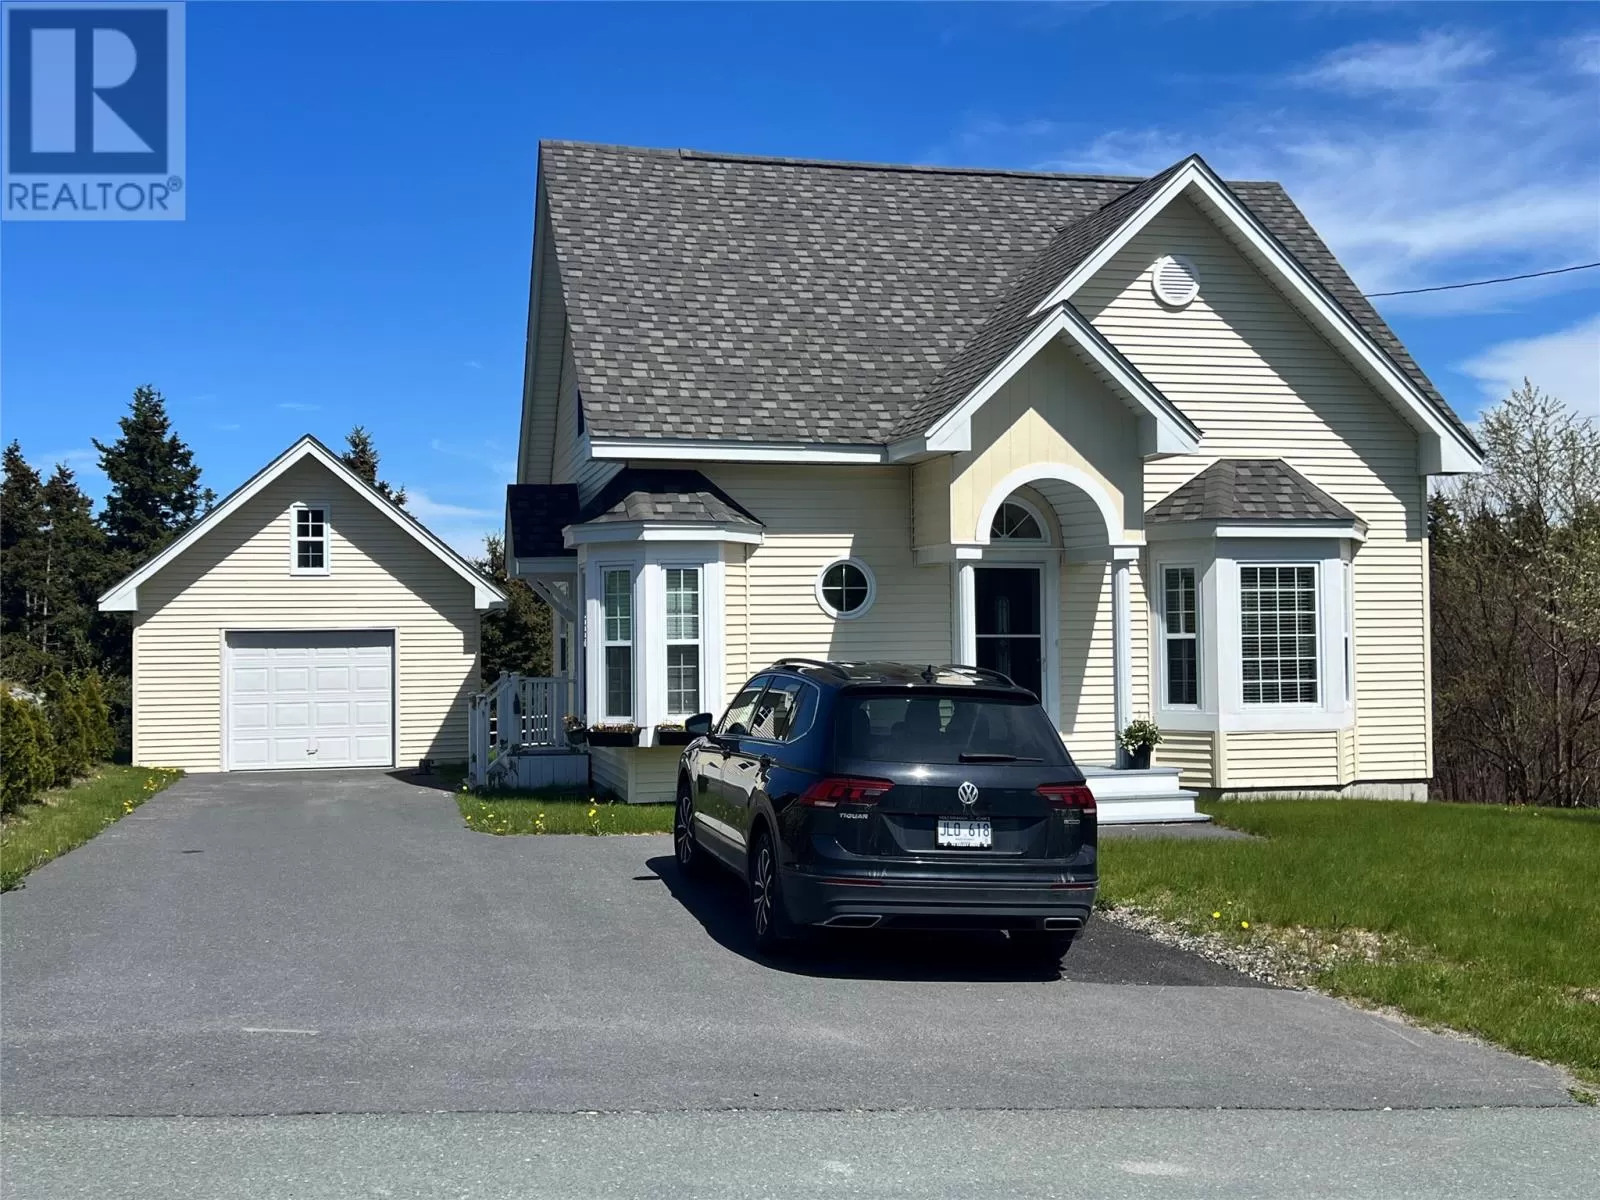 House for rent: 199 Main Street, Clarkes Beach, Newfoundland & Labrador A0A 1W0